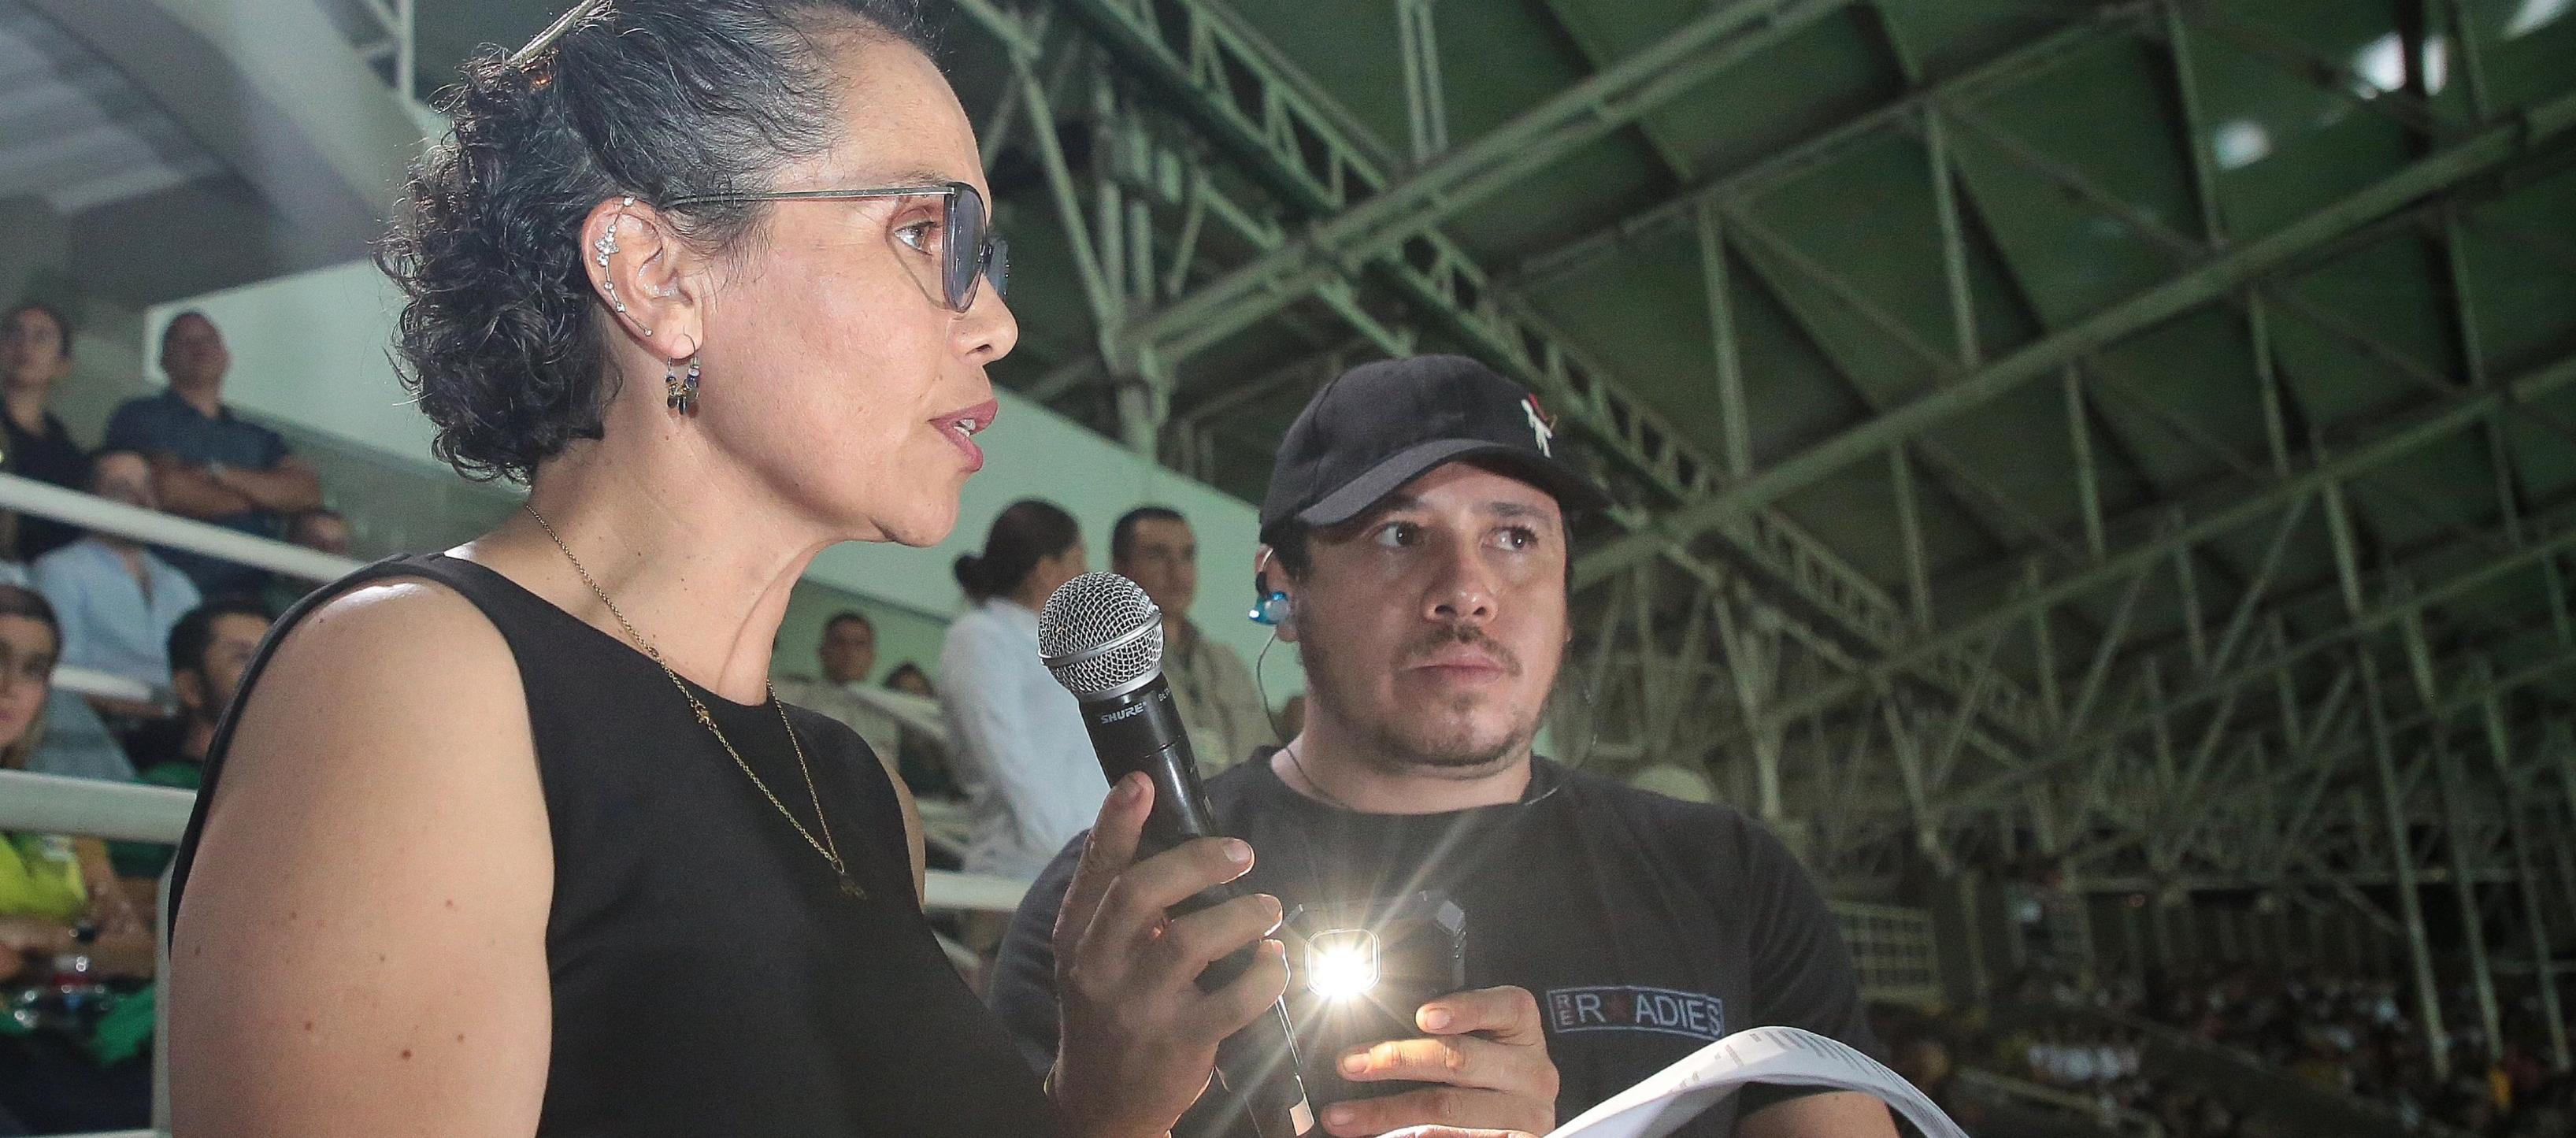  La ministra del Deporte, Astrid Rodríguez, cuando inauguraba los Juegos Nacionales en Pereira